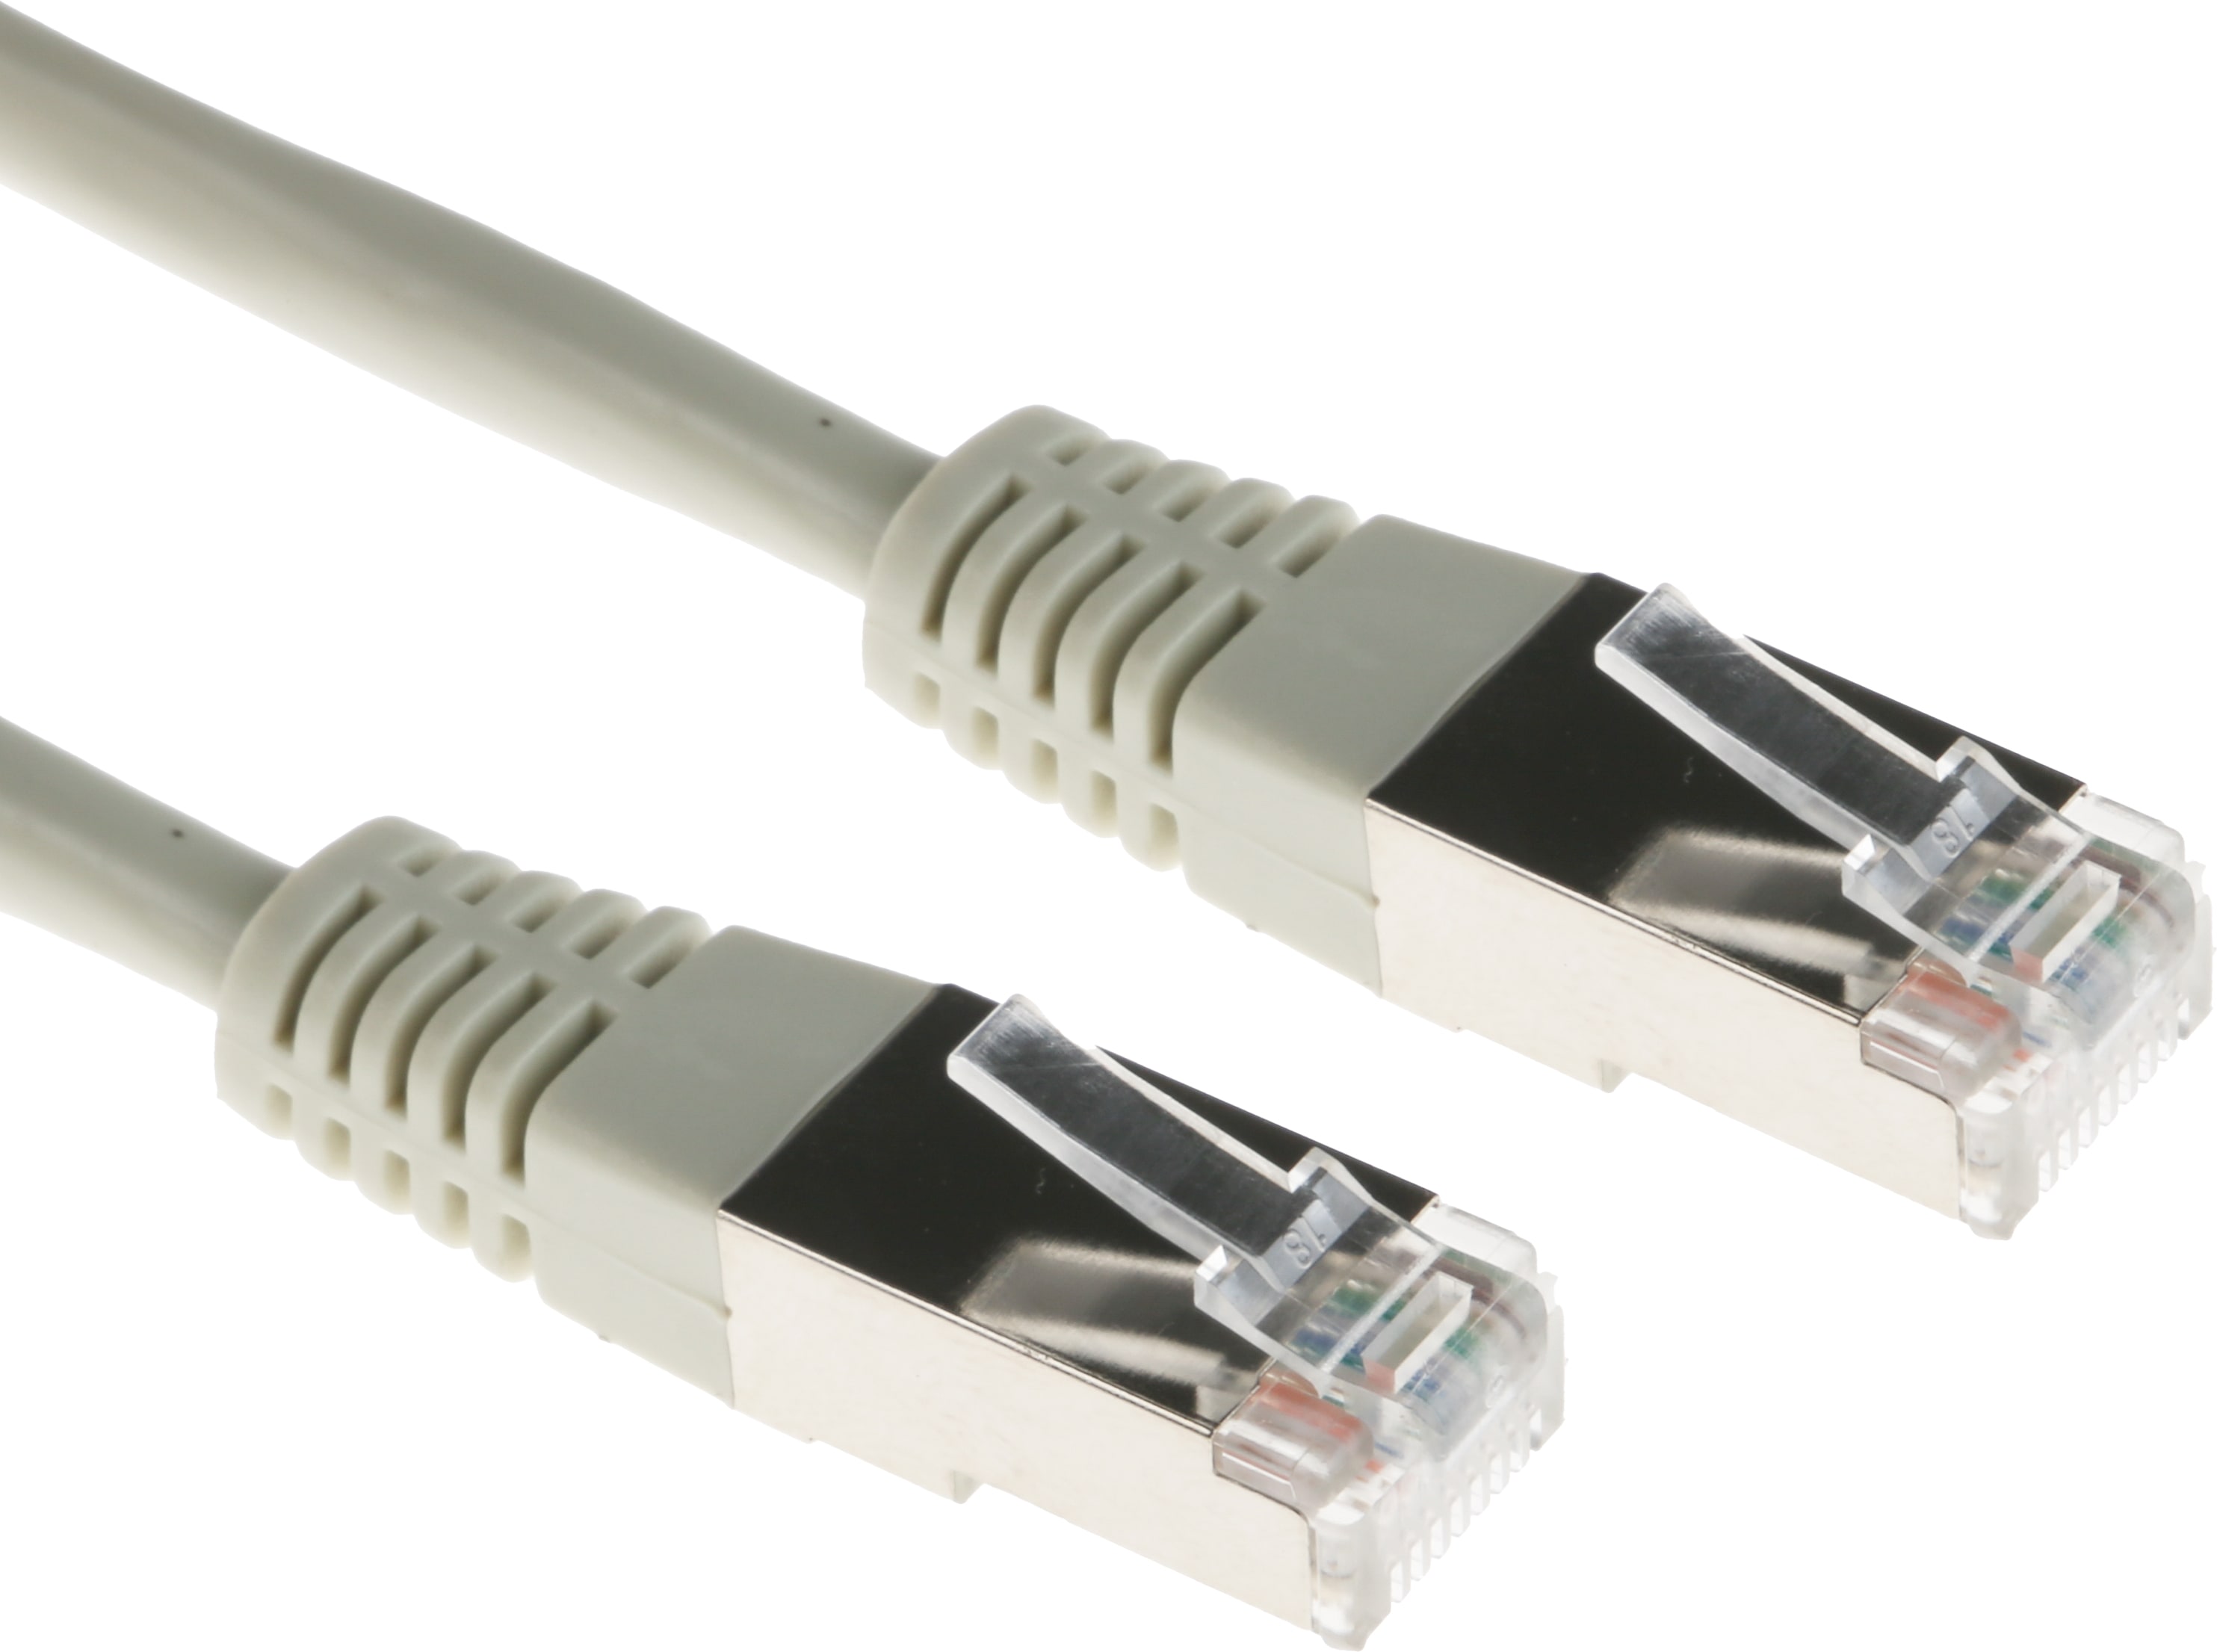 Comment choisir son câble RJ45, aussi appelé Ethernet ?